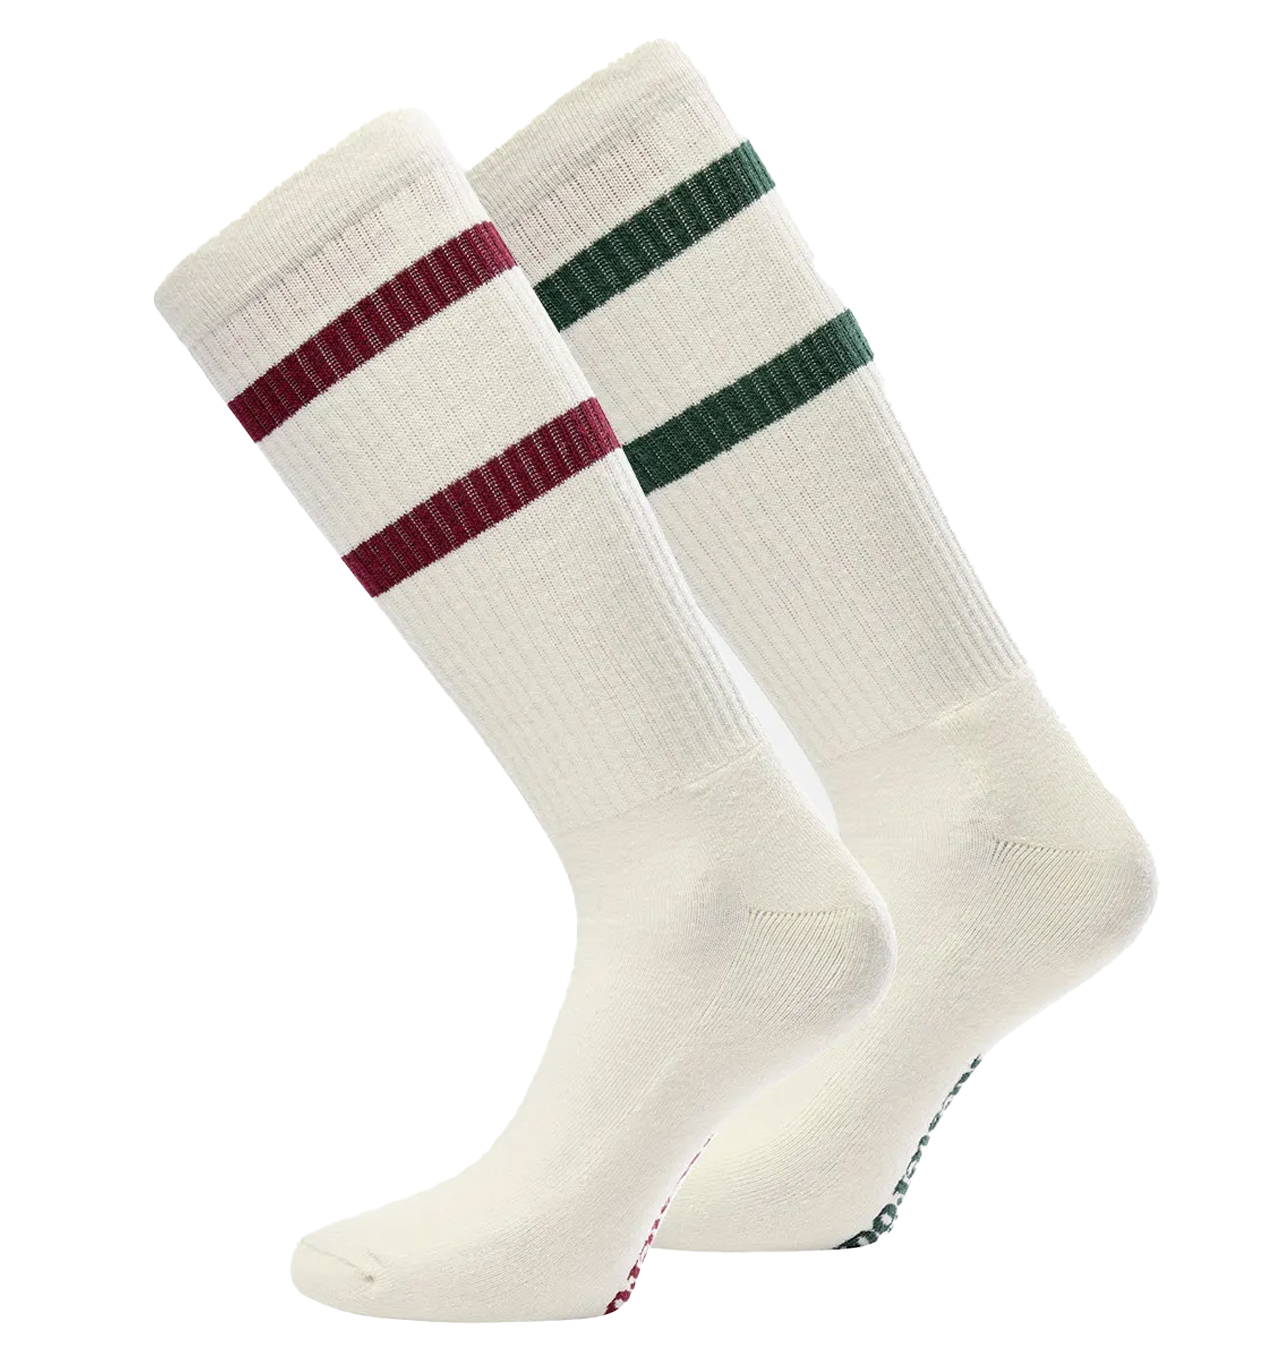 Resteröds - Tennis Socks 2-pack - Ecru/Red/Green